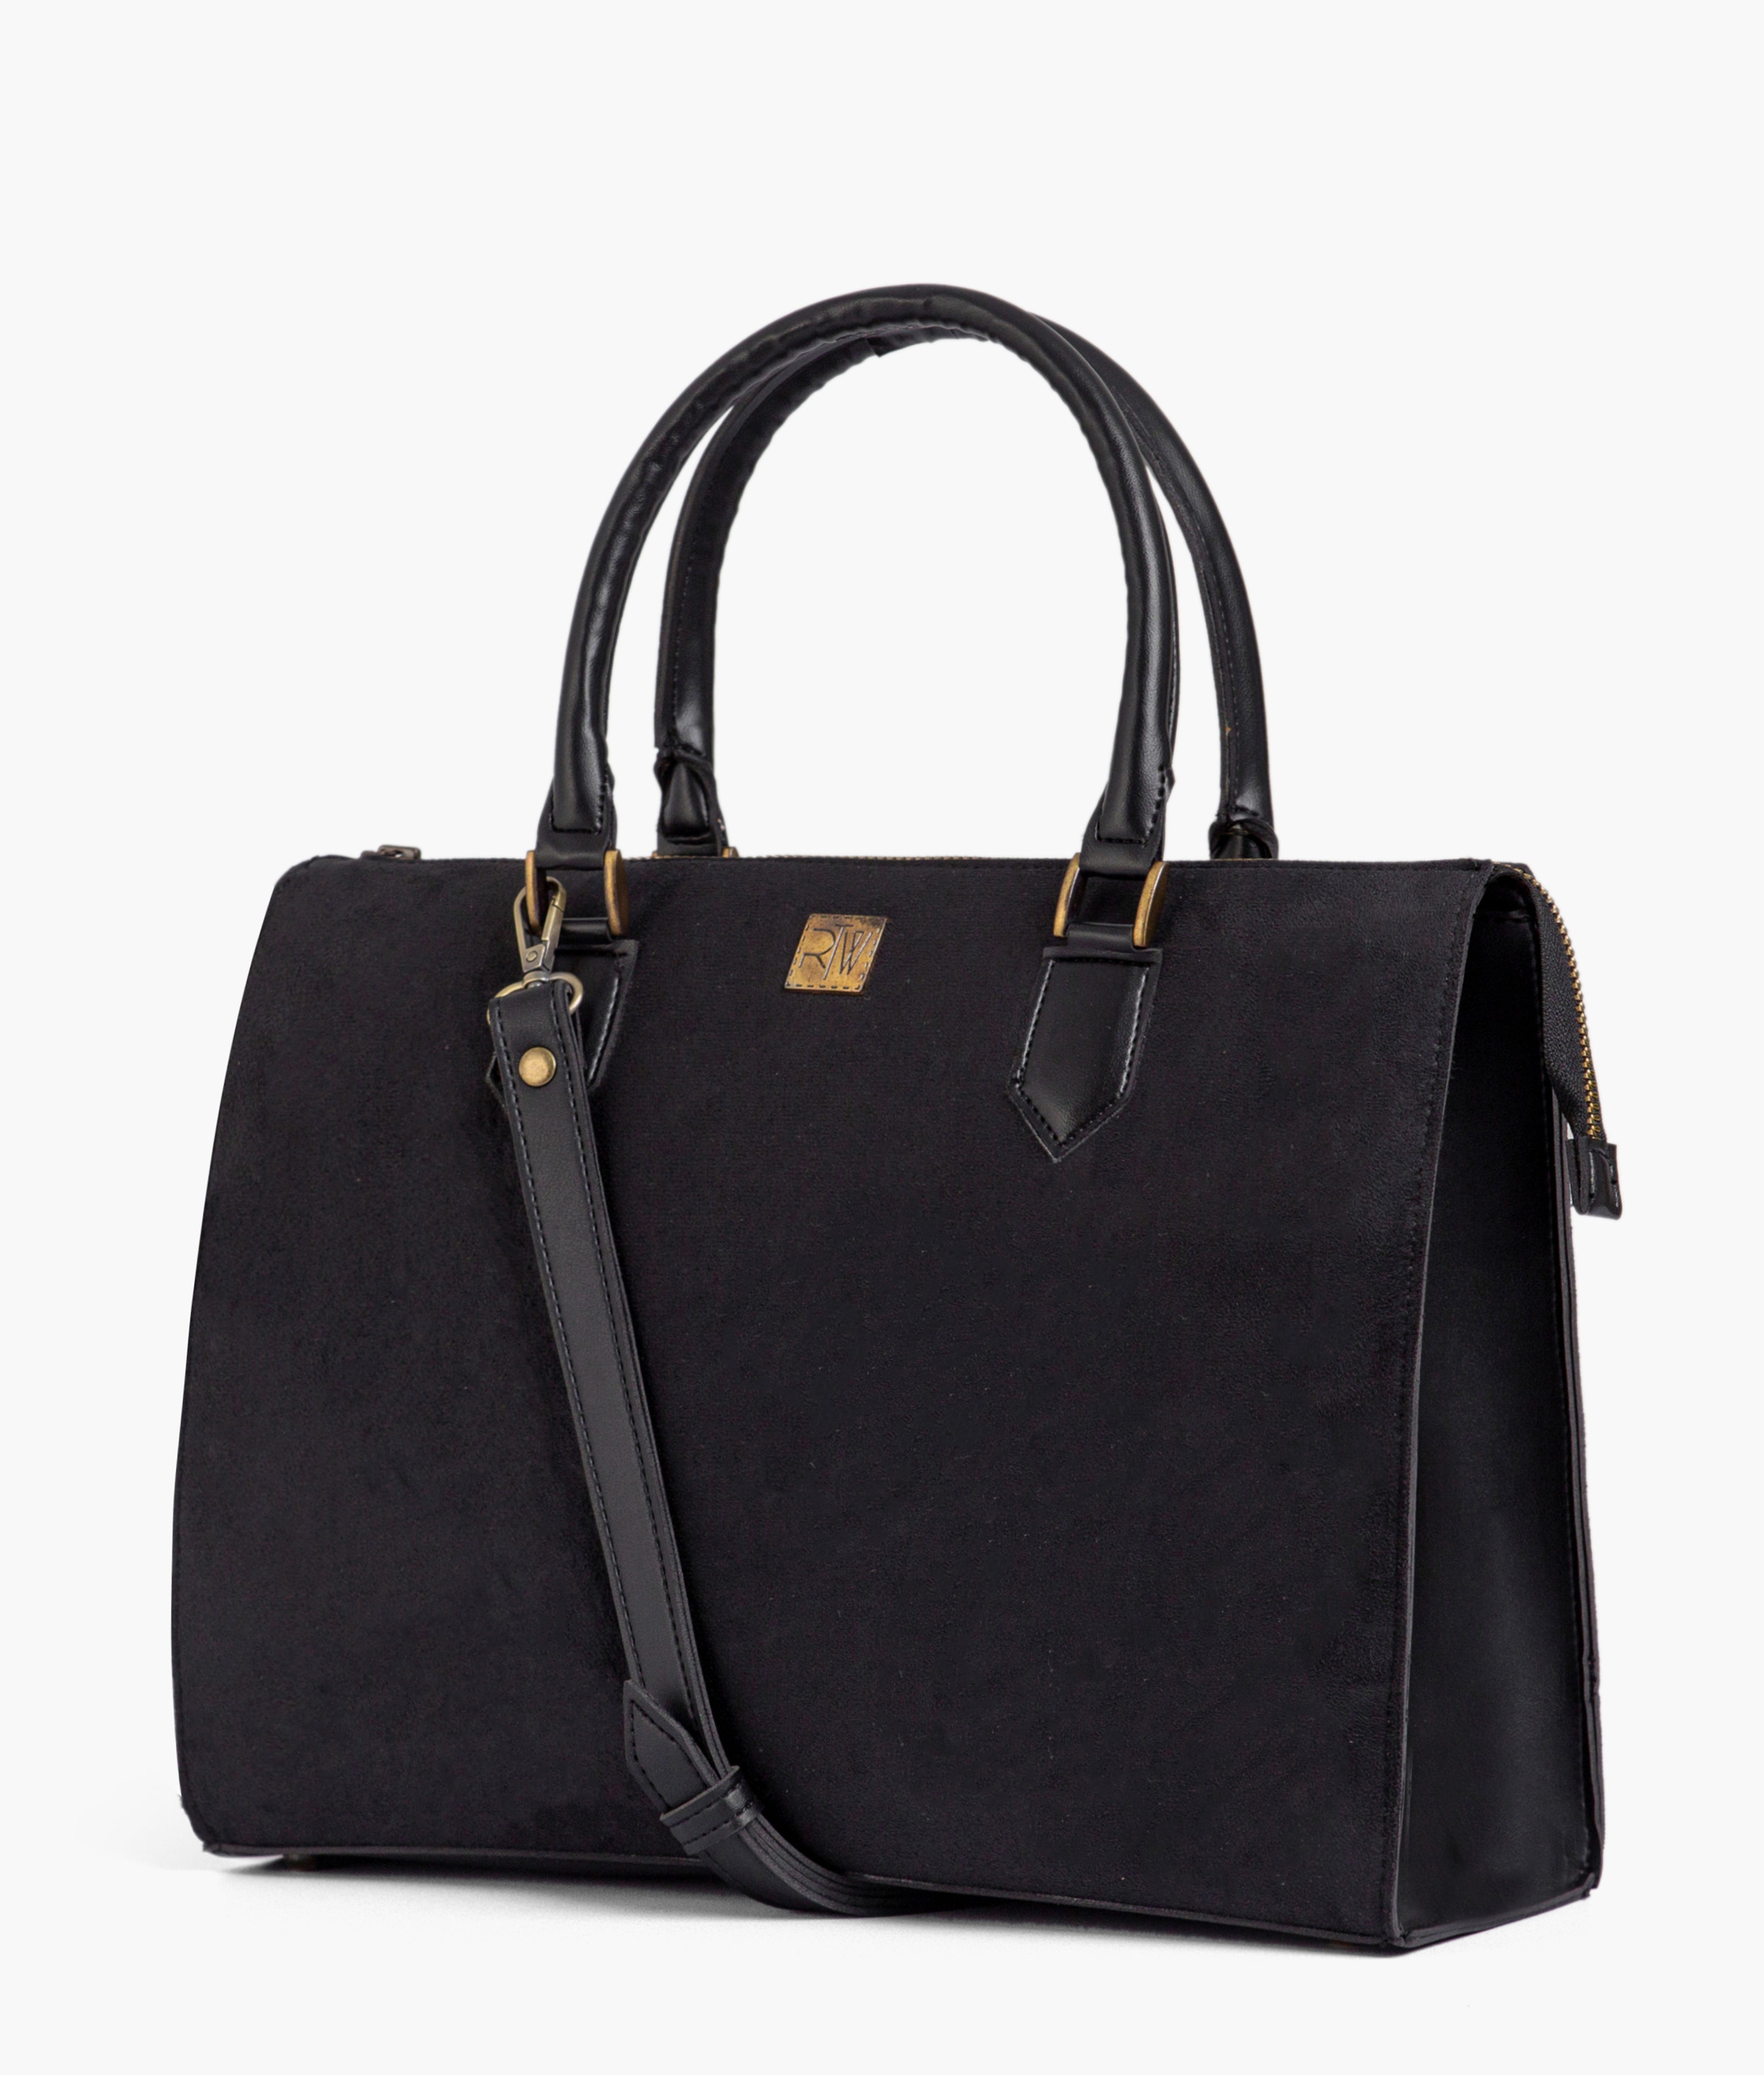 Black suede workplace handbag